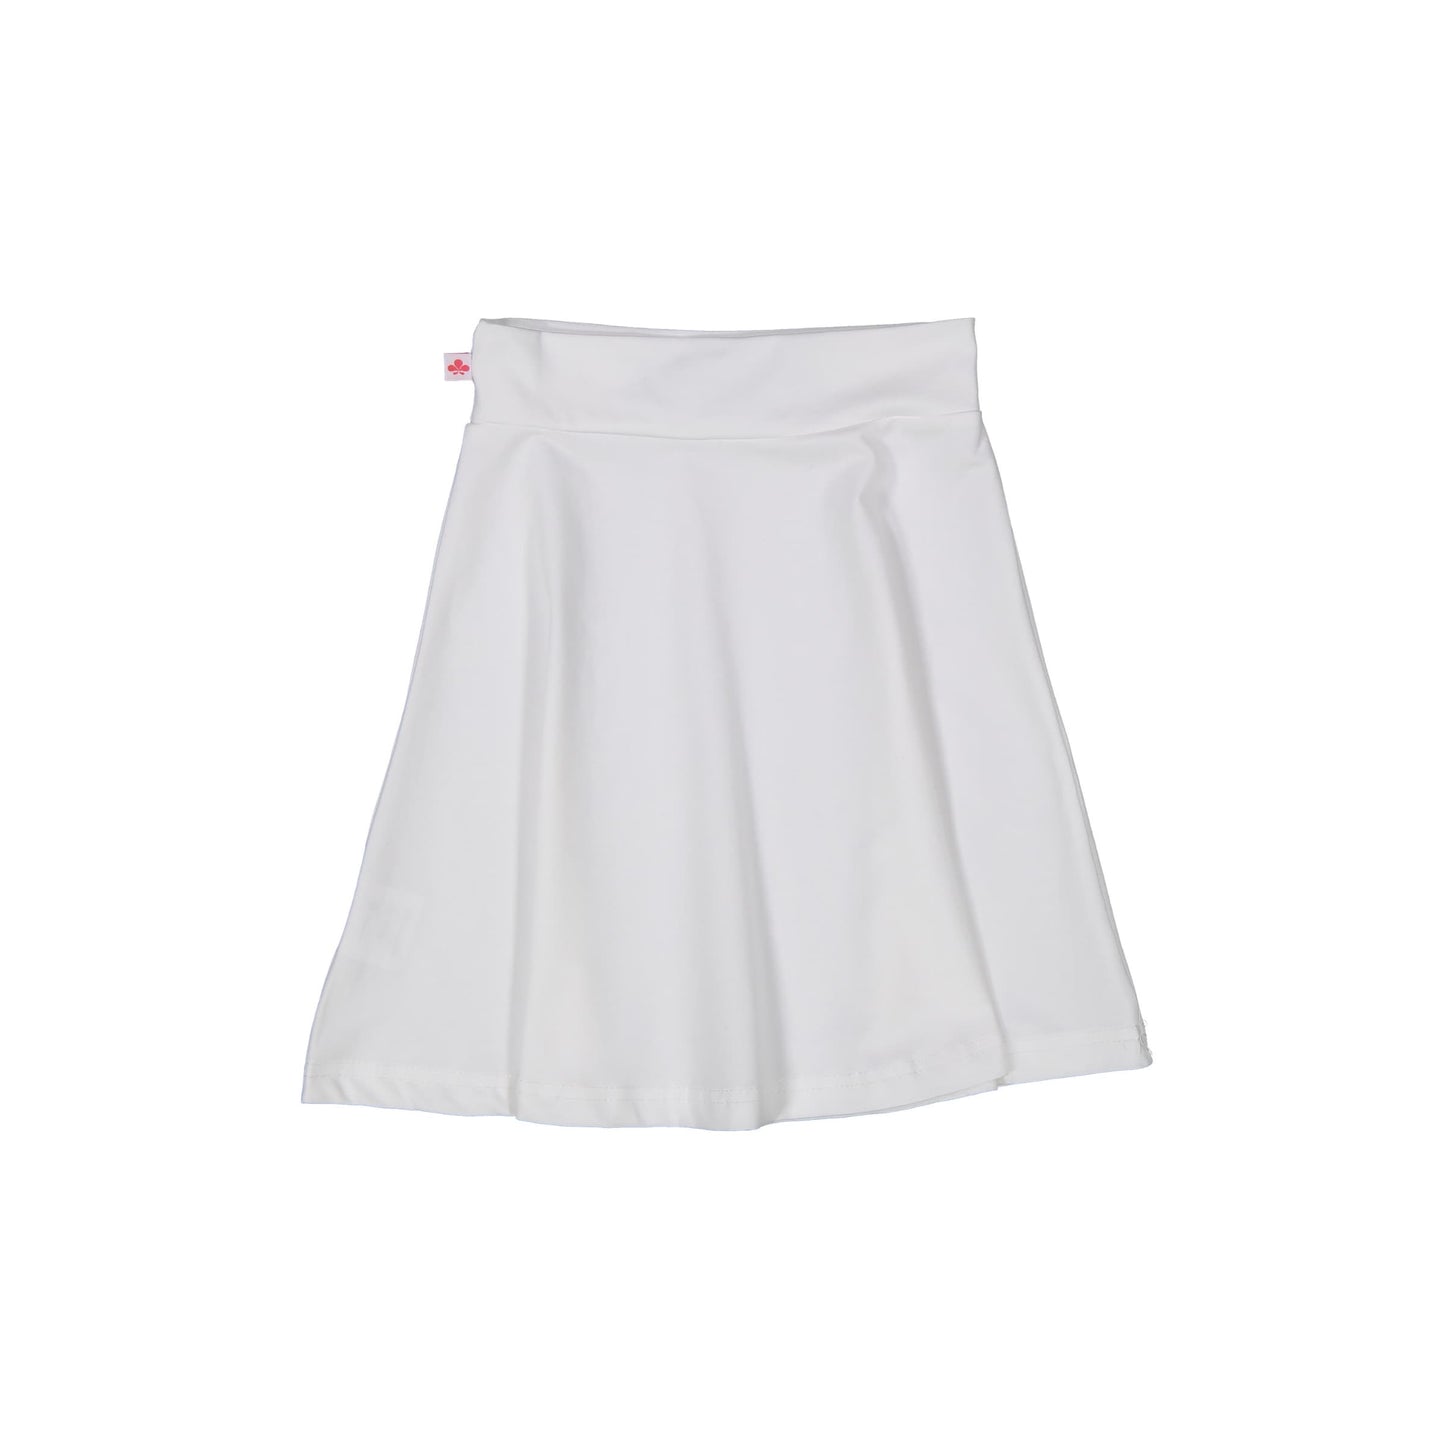 Camp Skirt Classic - White